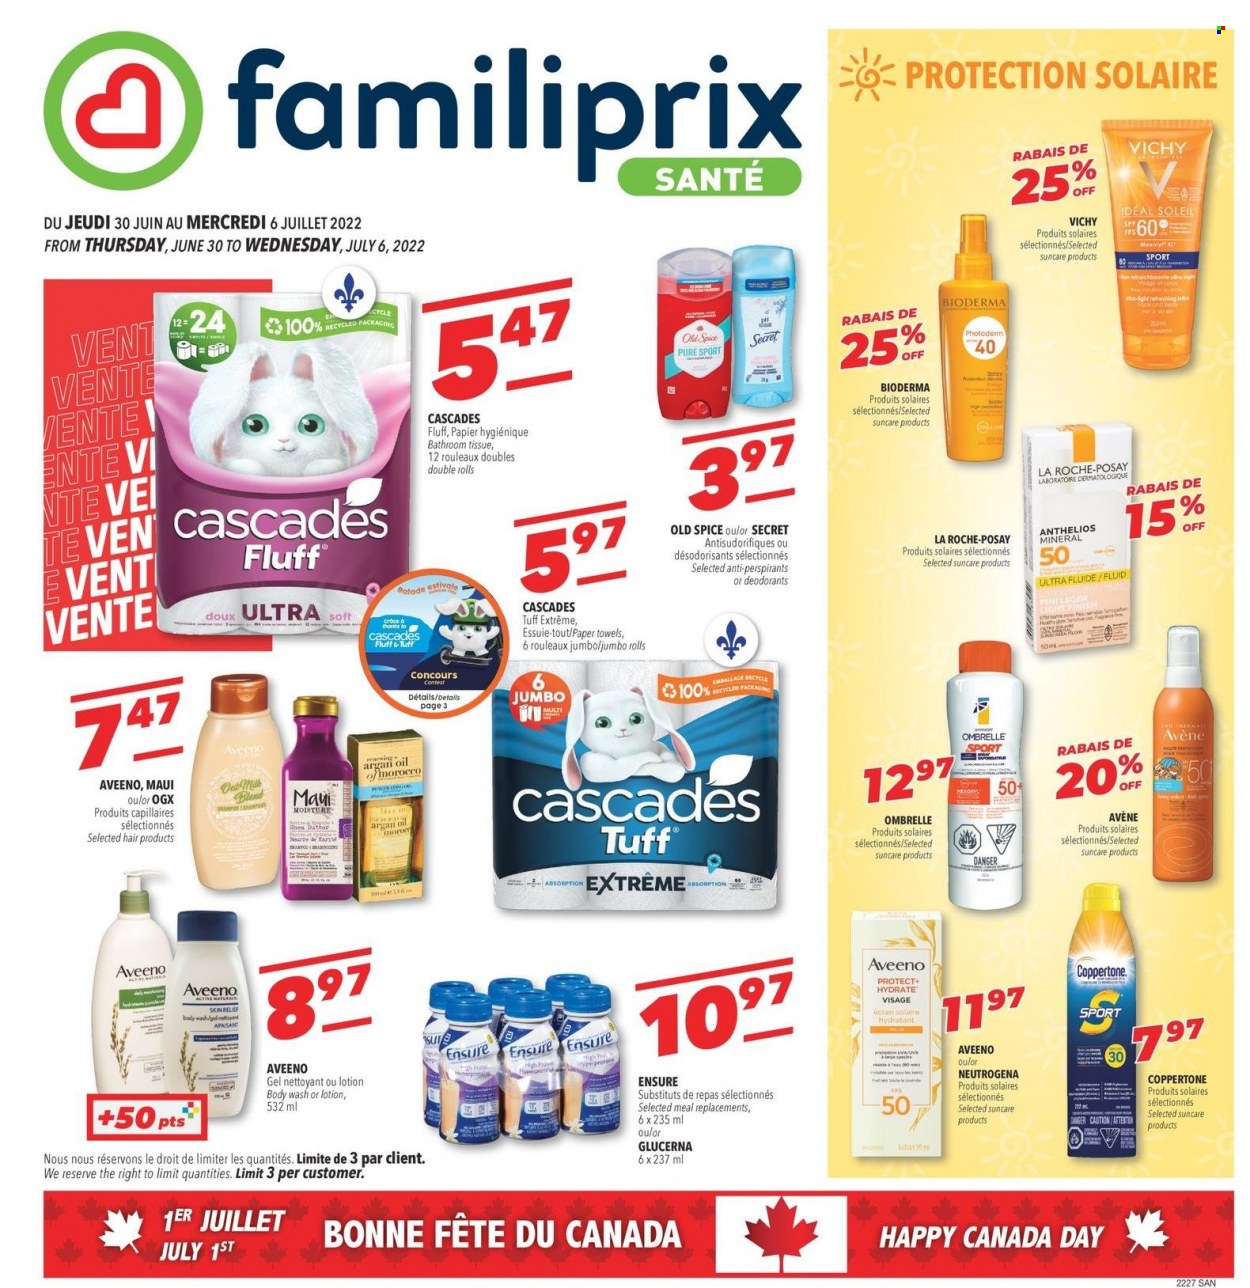 Familiprix Santé flyer  - June 30, 2022 - July 06, 2022.